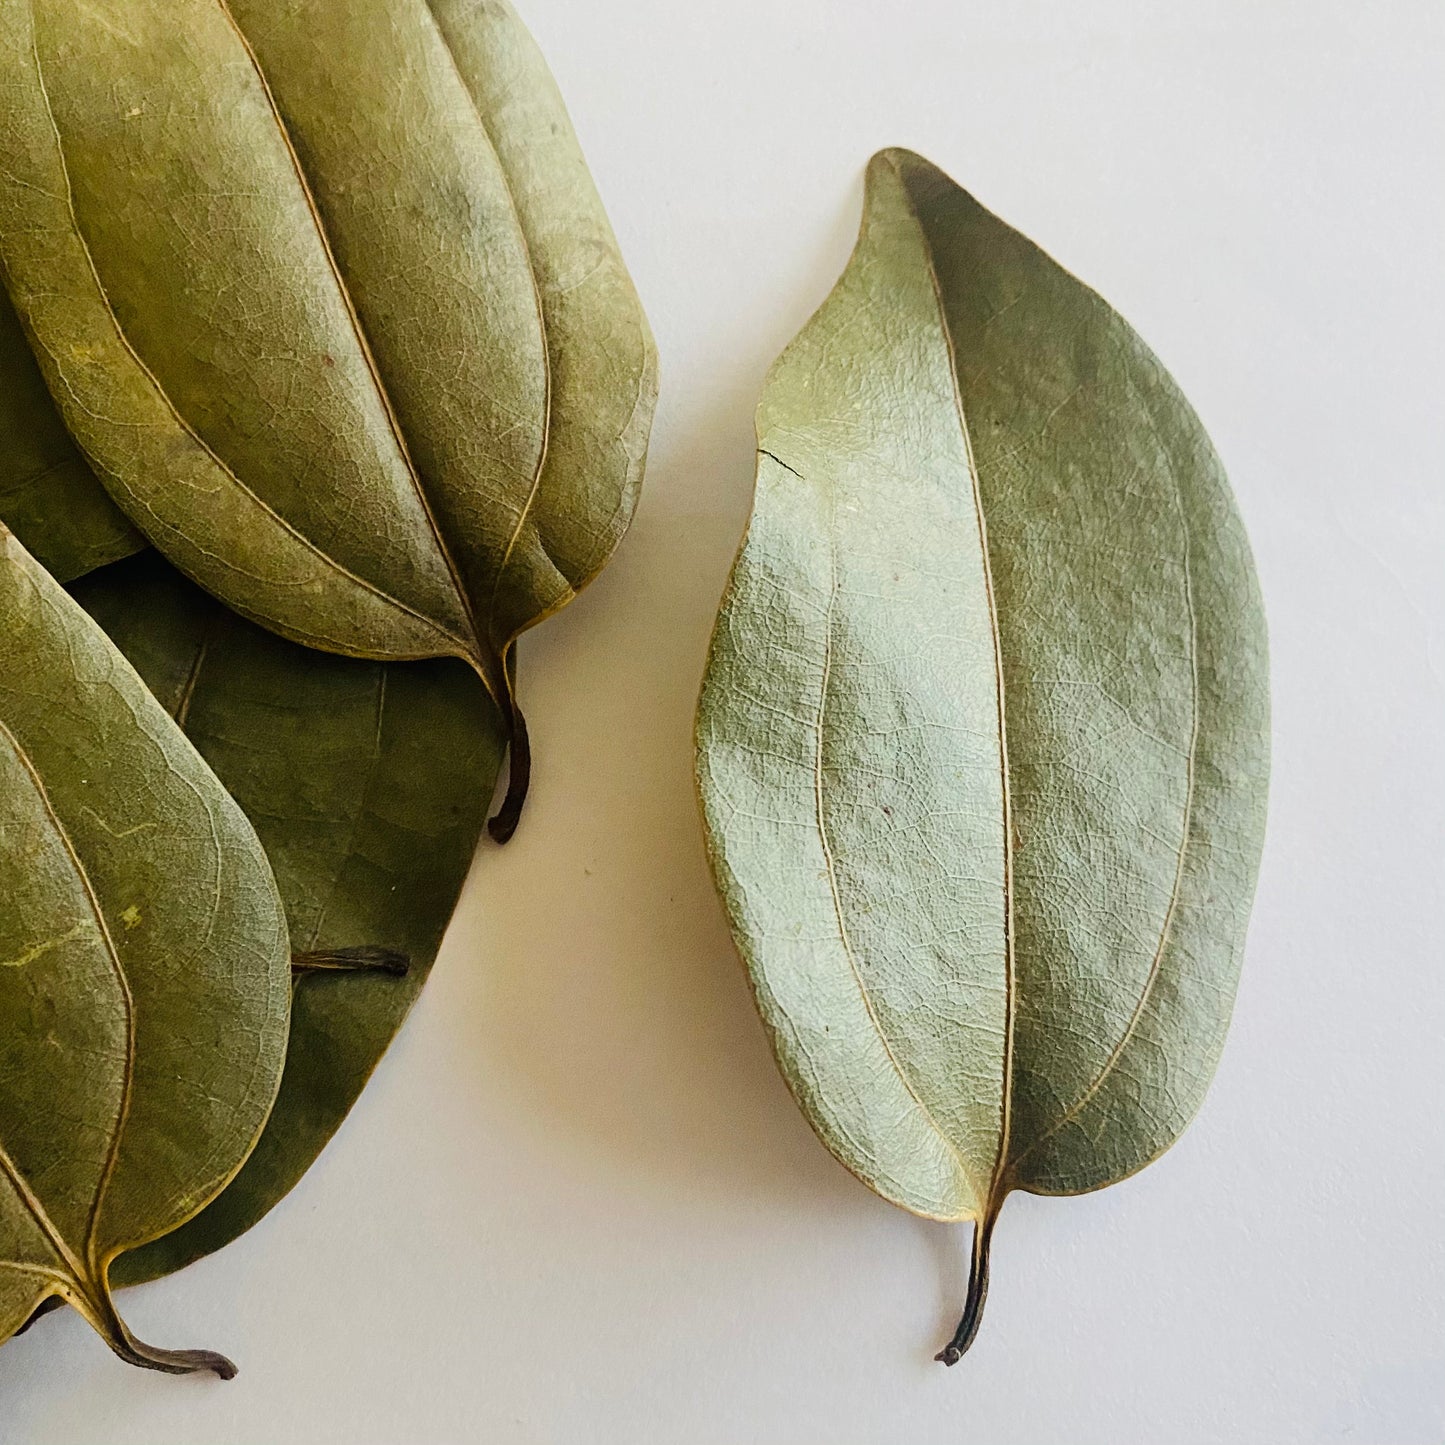 Cinnamon Leaves, Organic, Grown in Jamaica